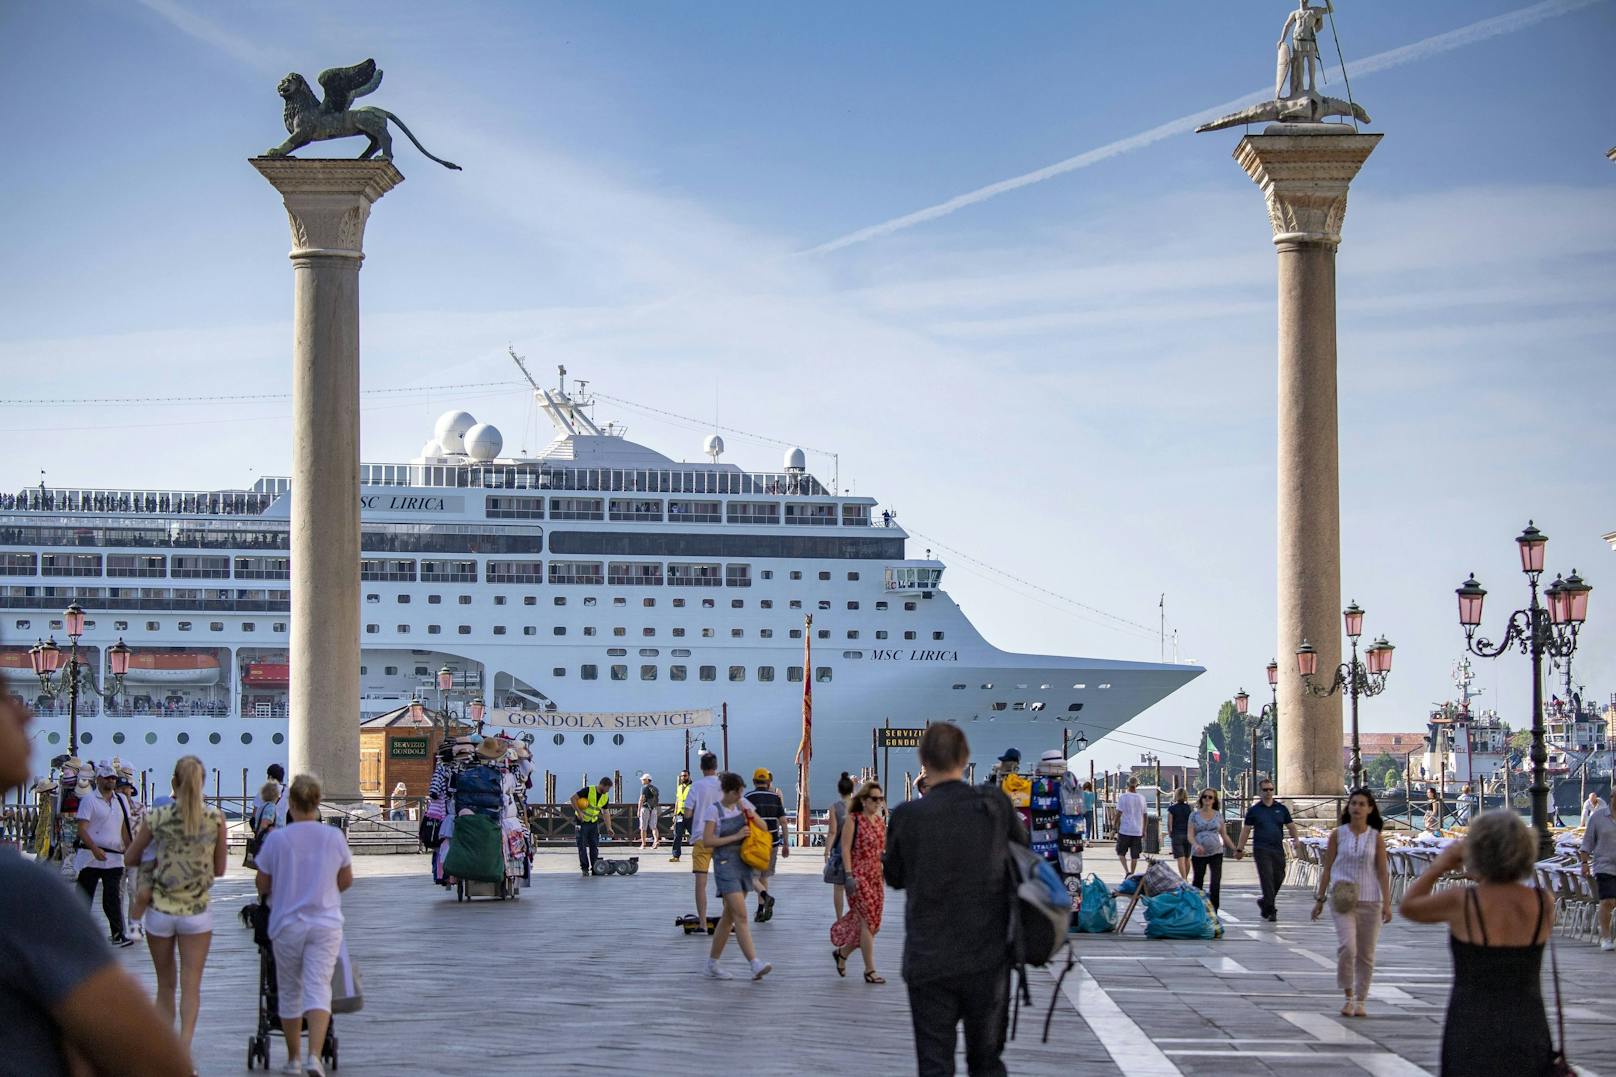 Nach jahrelangen Protesten dürfen große Schiffe vor San Marco und auf dem Giudecca-Kanal ab dem 1. August nicht mehr durchfahren. Foto am 20.06.2019 aufgenommen.